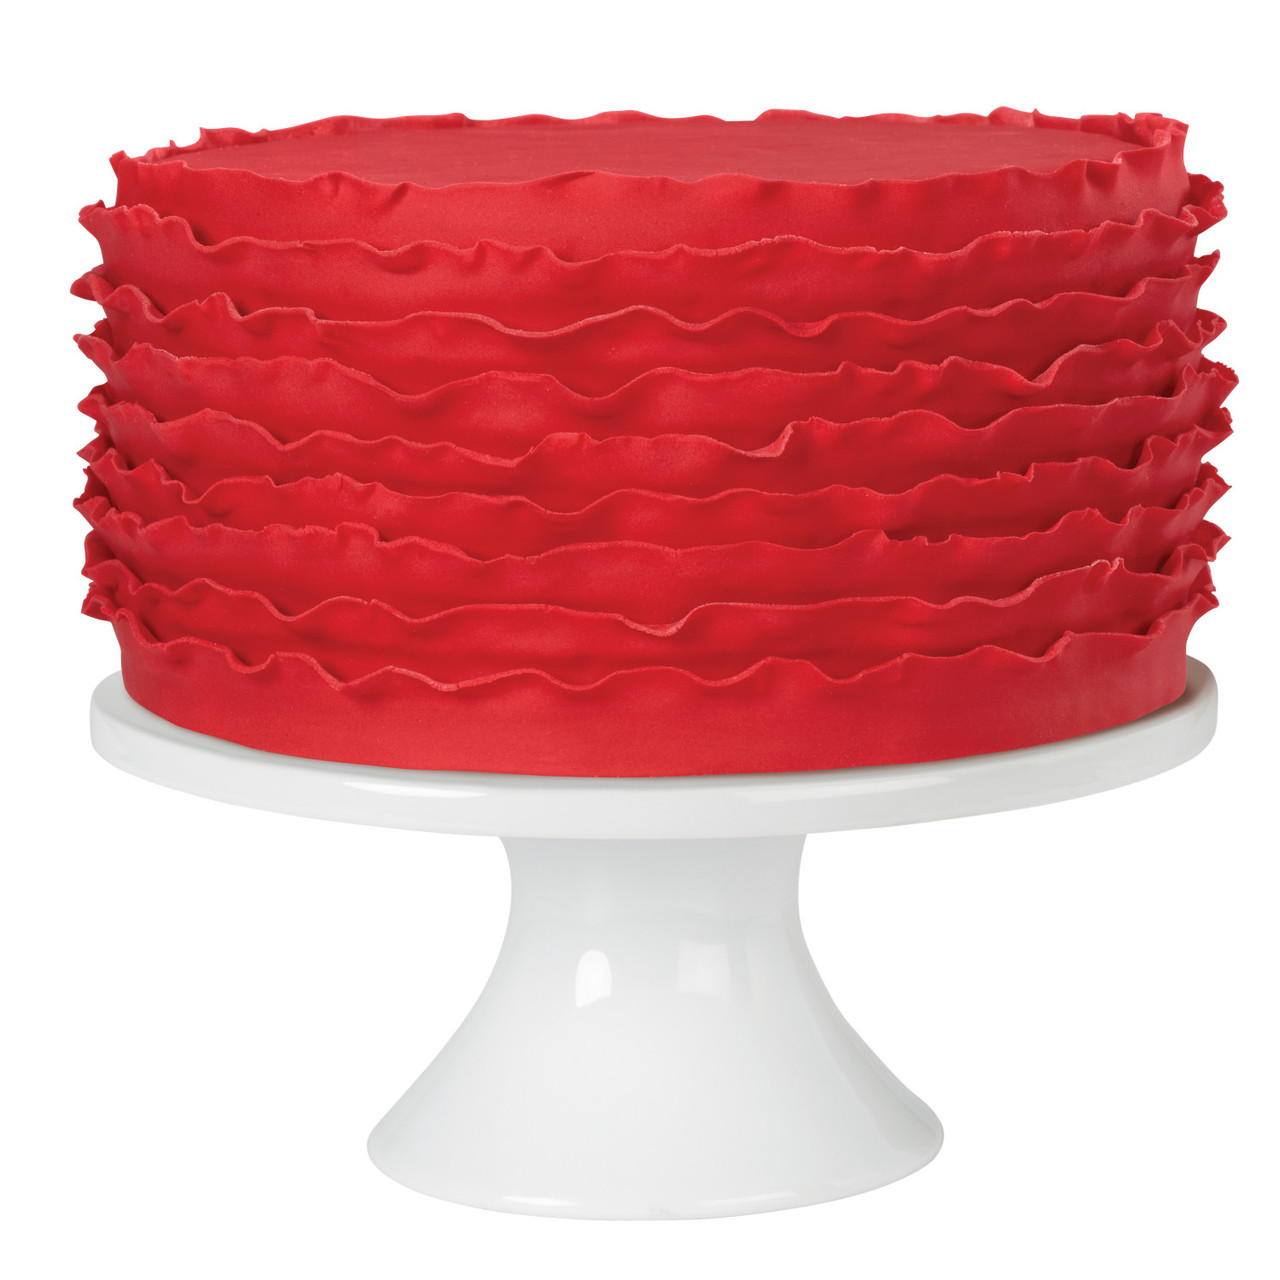 Wilton Edible Cake Topper, 8 Ounces, Red